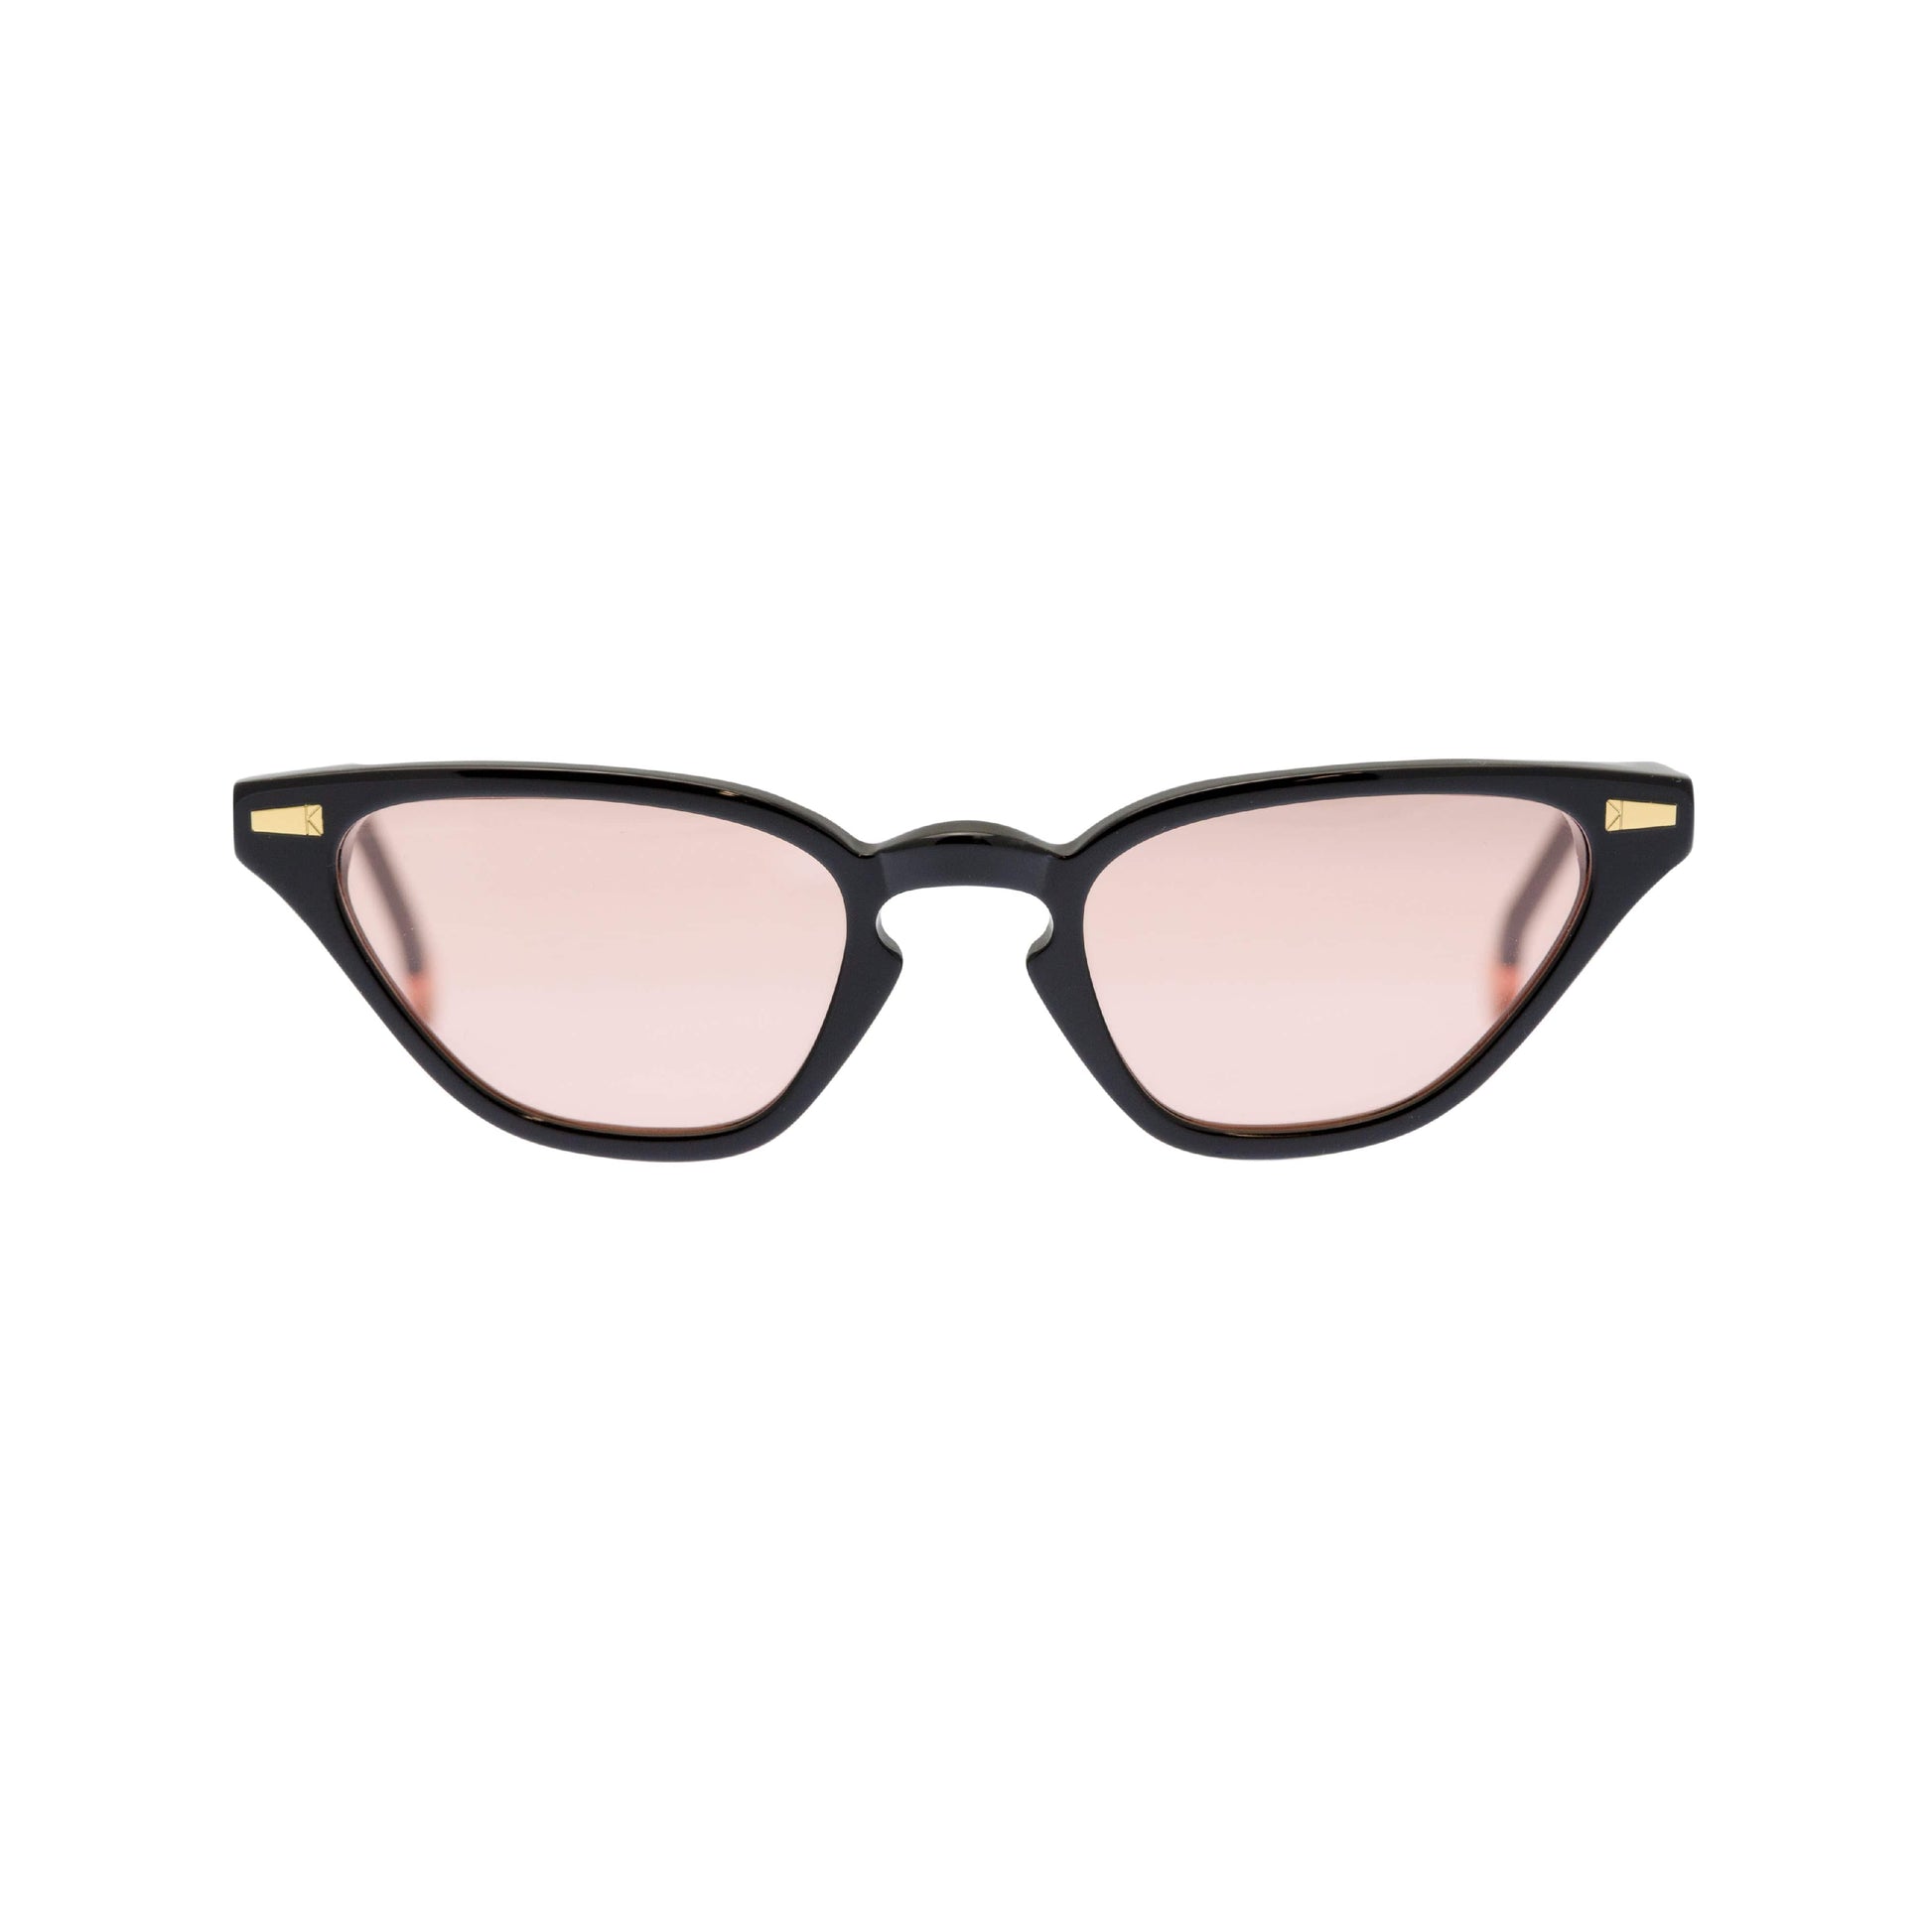 Kyme: Alessandra - Spectaclo.com - eyewear store - Occhiali da sole - Nero lucido e rosa / Rettangolare / 46